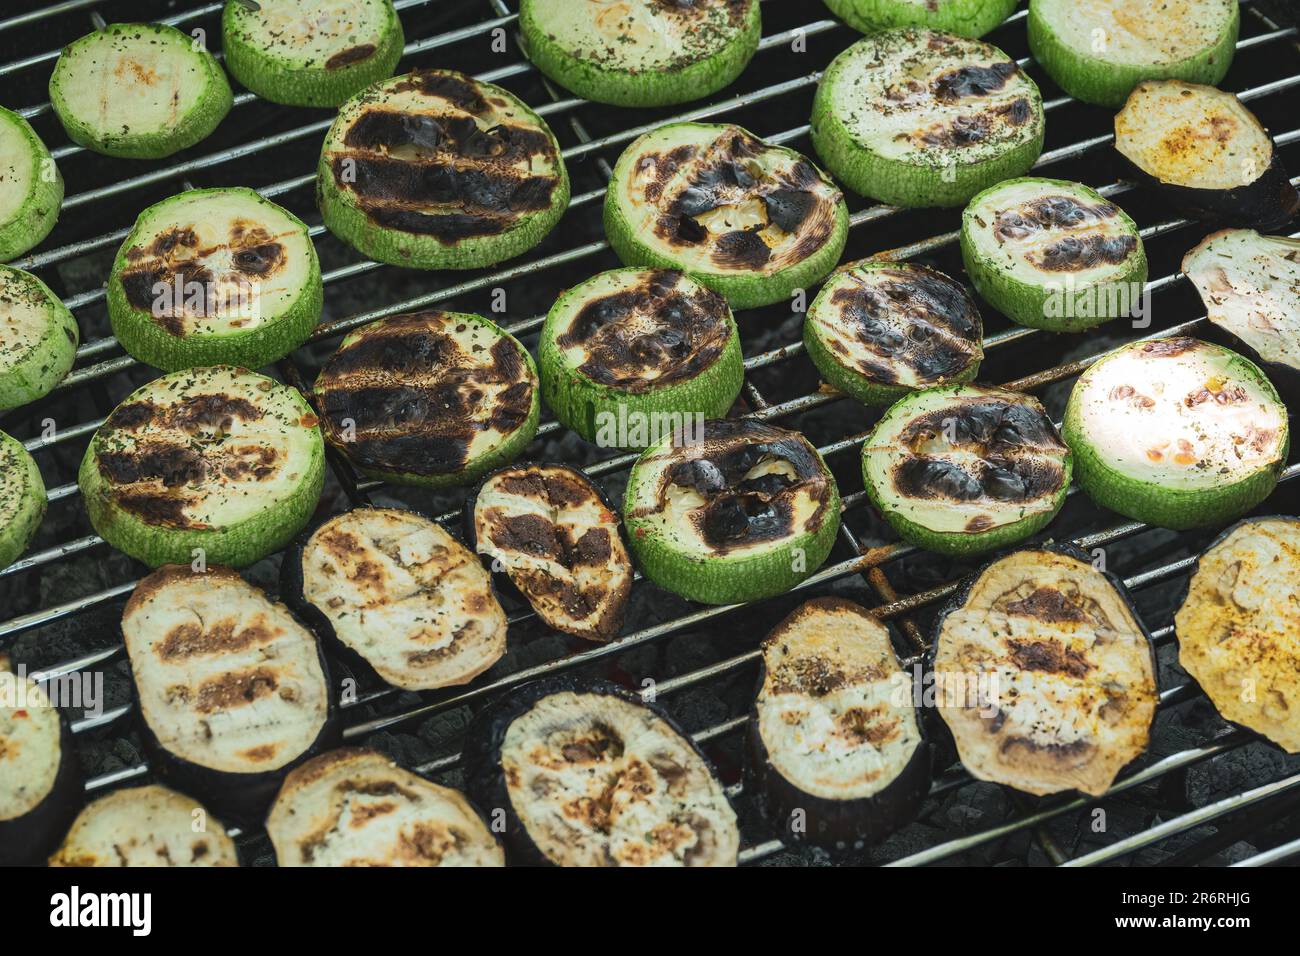 Anneaux de courgettes grillées sur la grille du barbecue. Pique-nique d'été. Légumes fumés et rôtis Banque D'Images